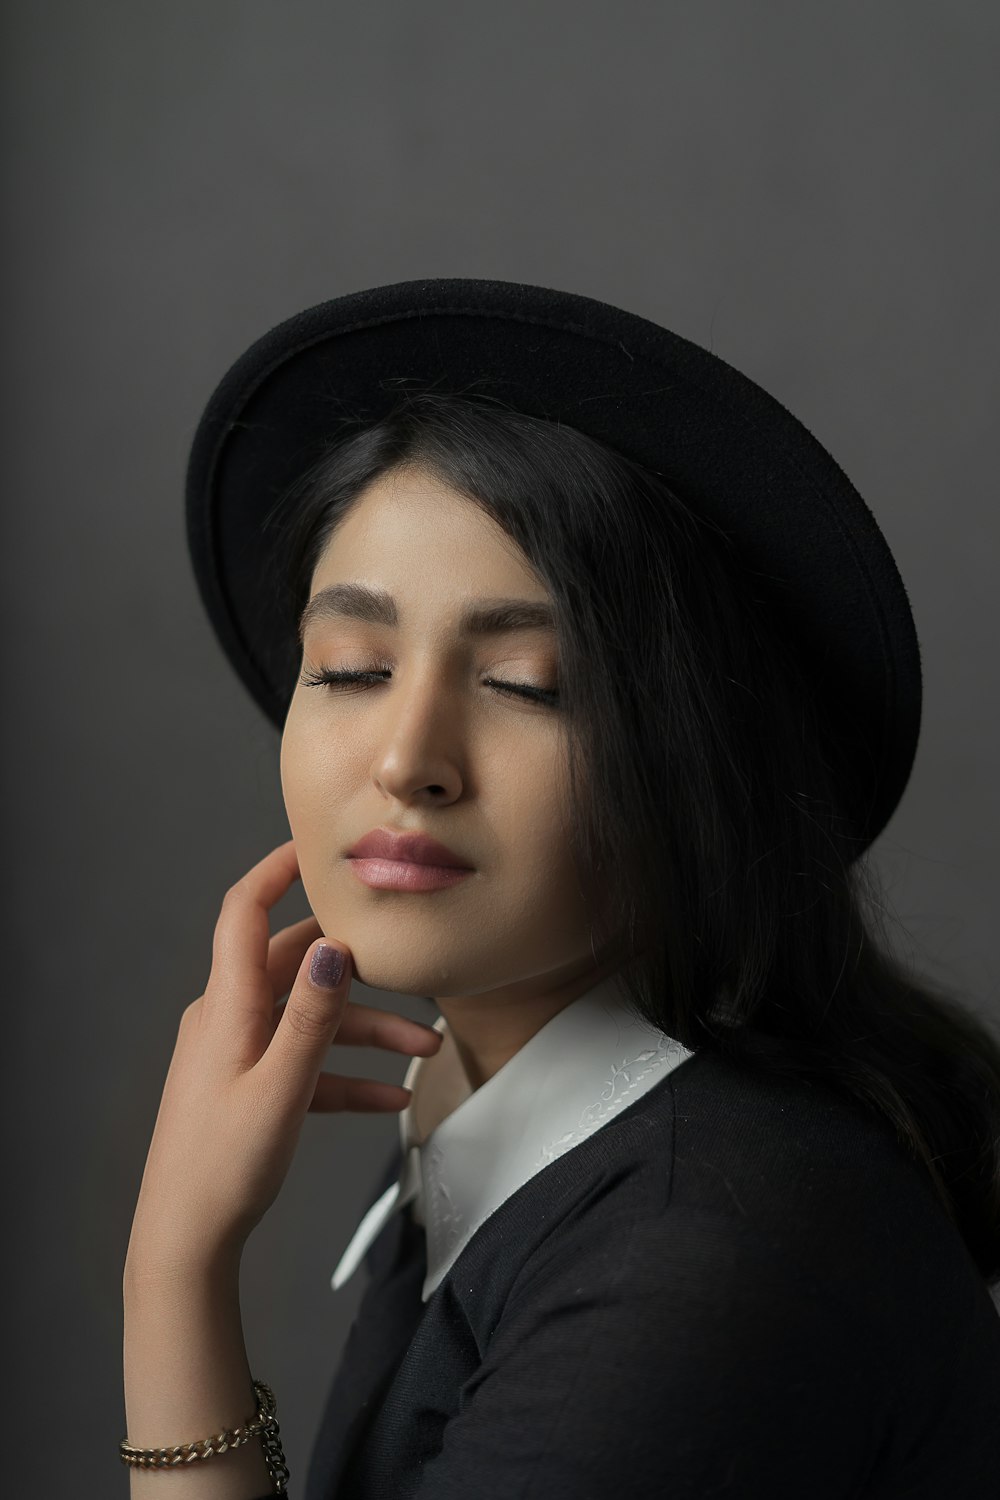 Eine Frau, die einen schwarzen Hut mit geschlossenen Augen trägt